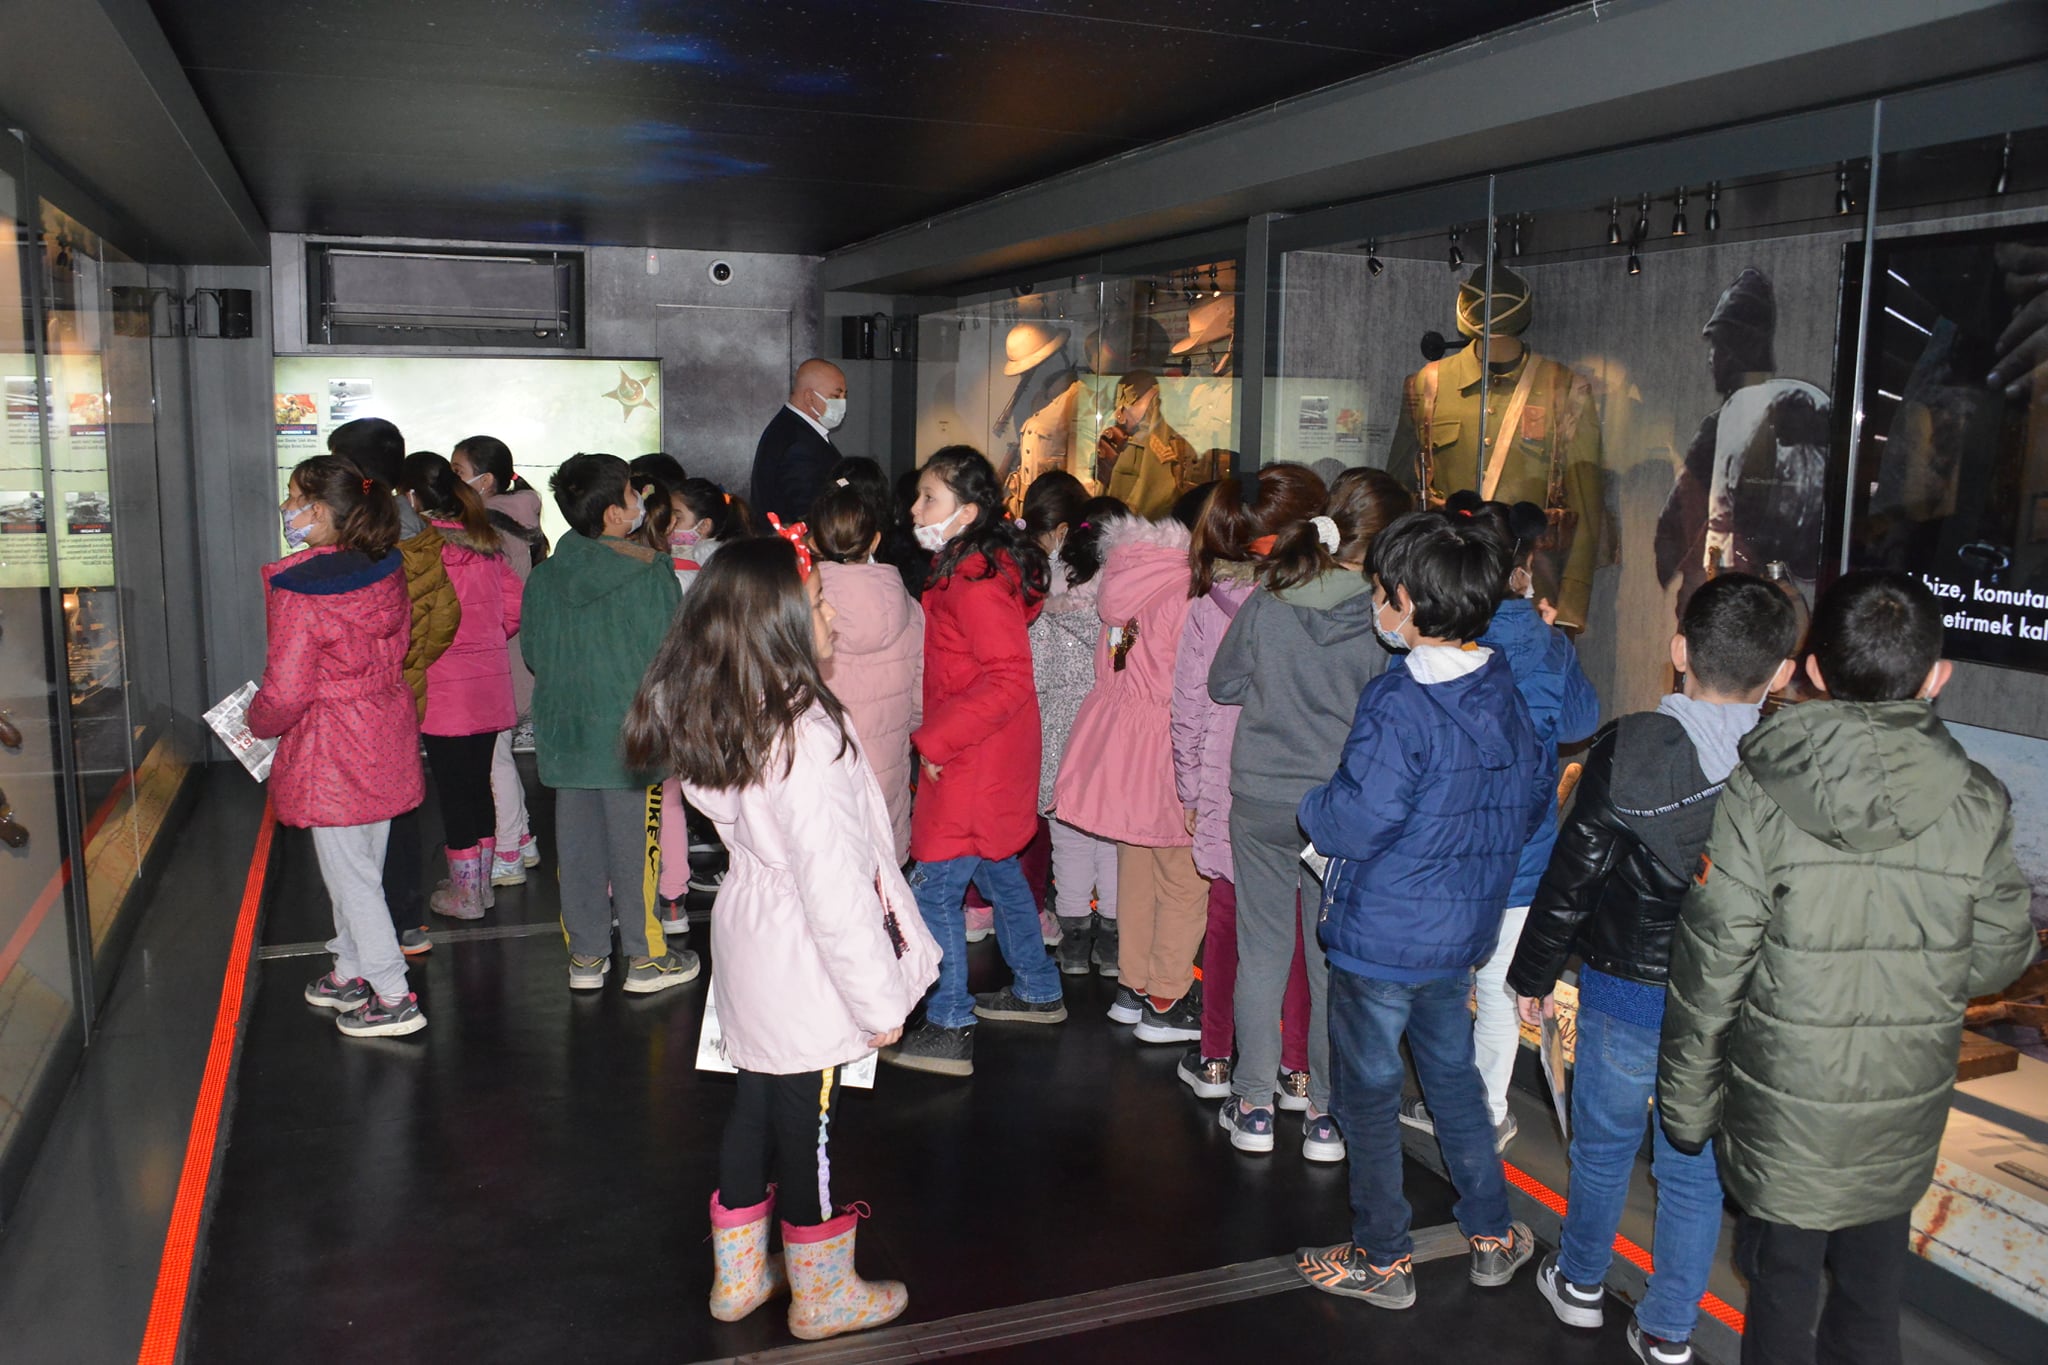 Mobil müze Gediz’de ziyarete açıldı